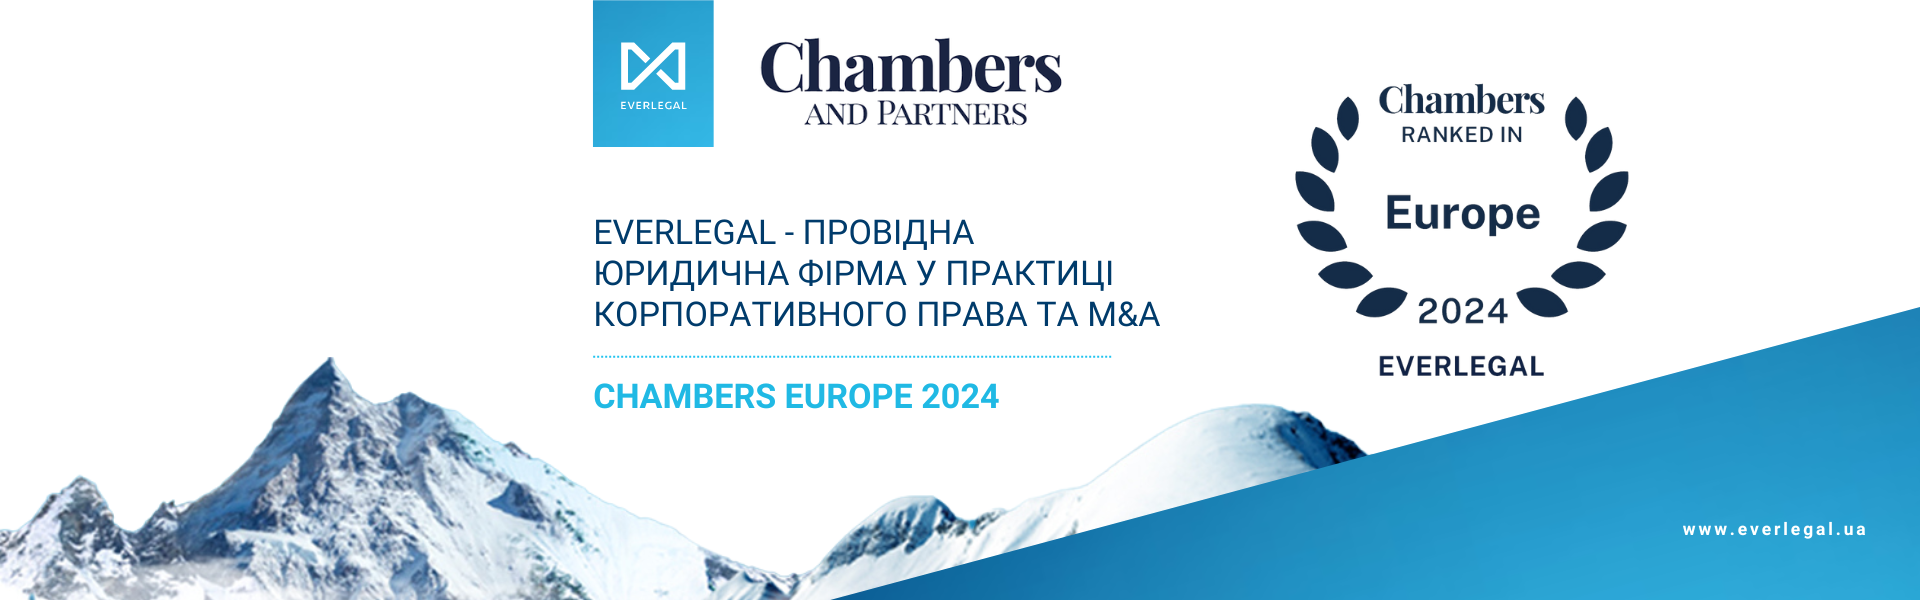 EVERLEGAL - провідна юридична фірма у практиці корпоративного права та M&A за результатами рейтингу Chambers Europe 2024